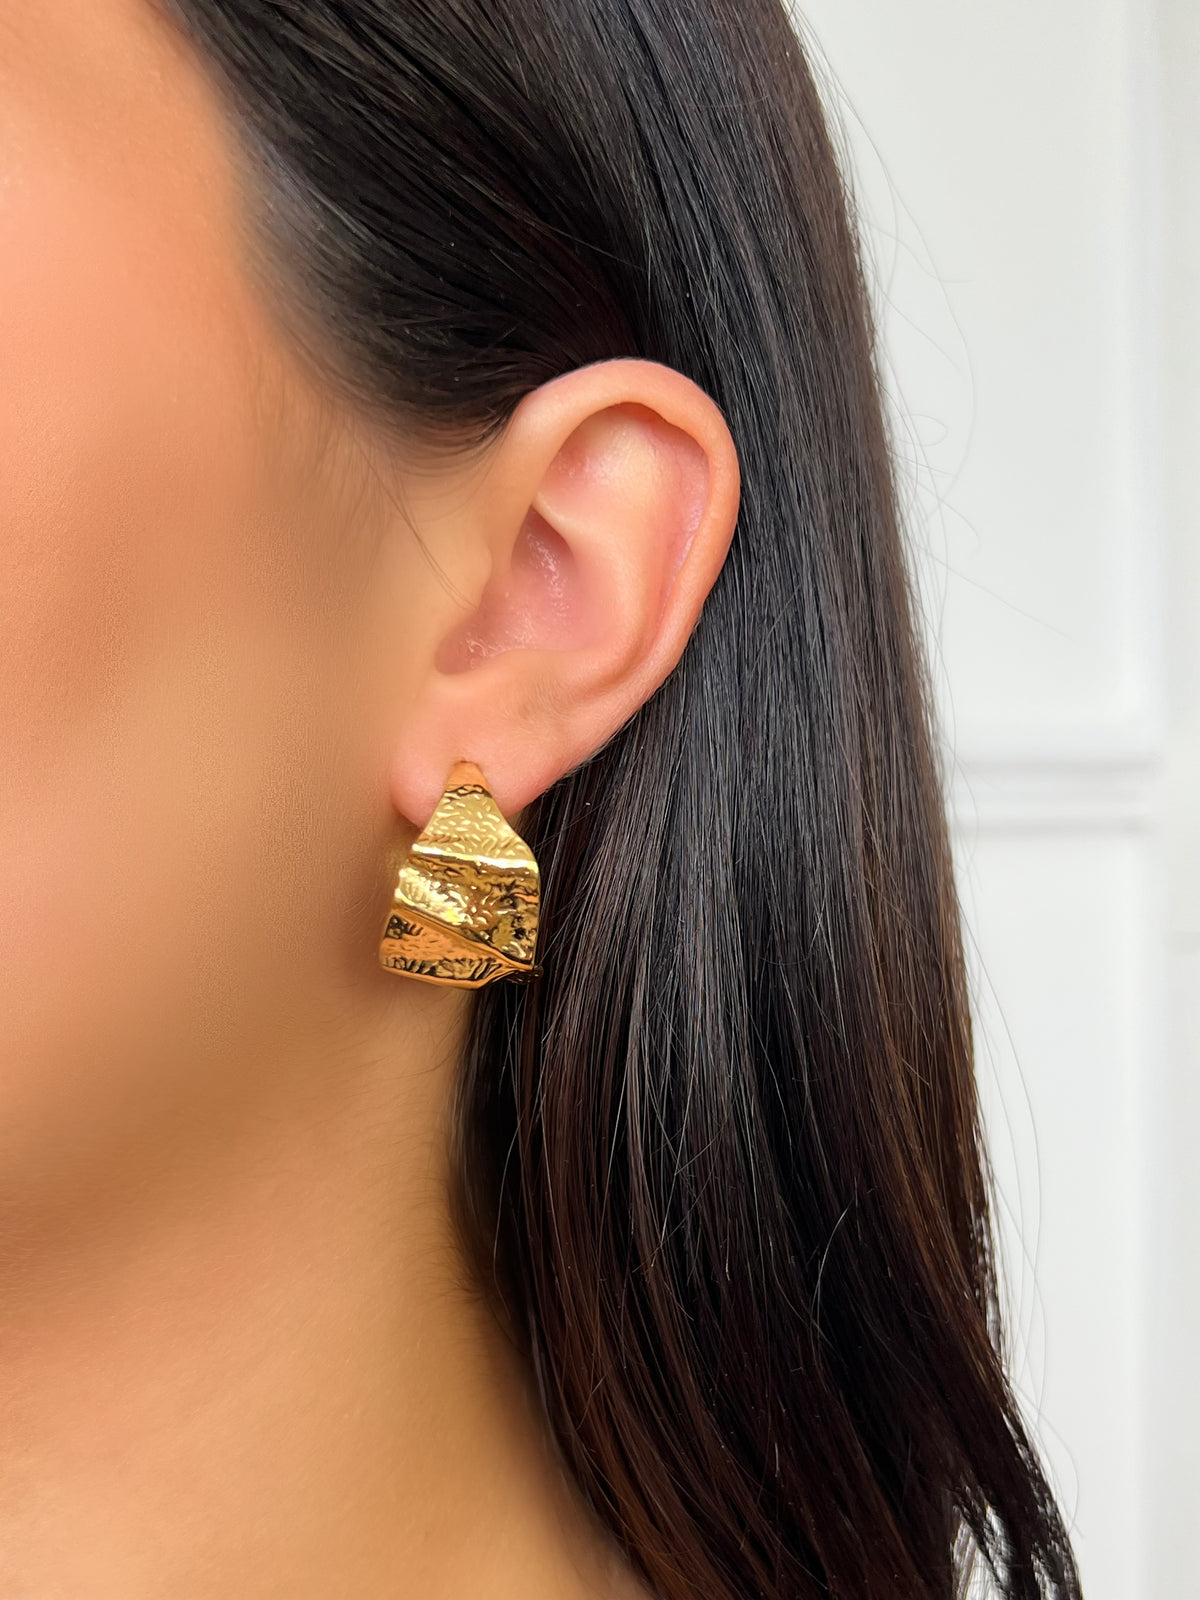 Boucles d'oreilles dorées : Deidra